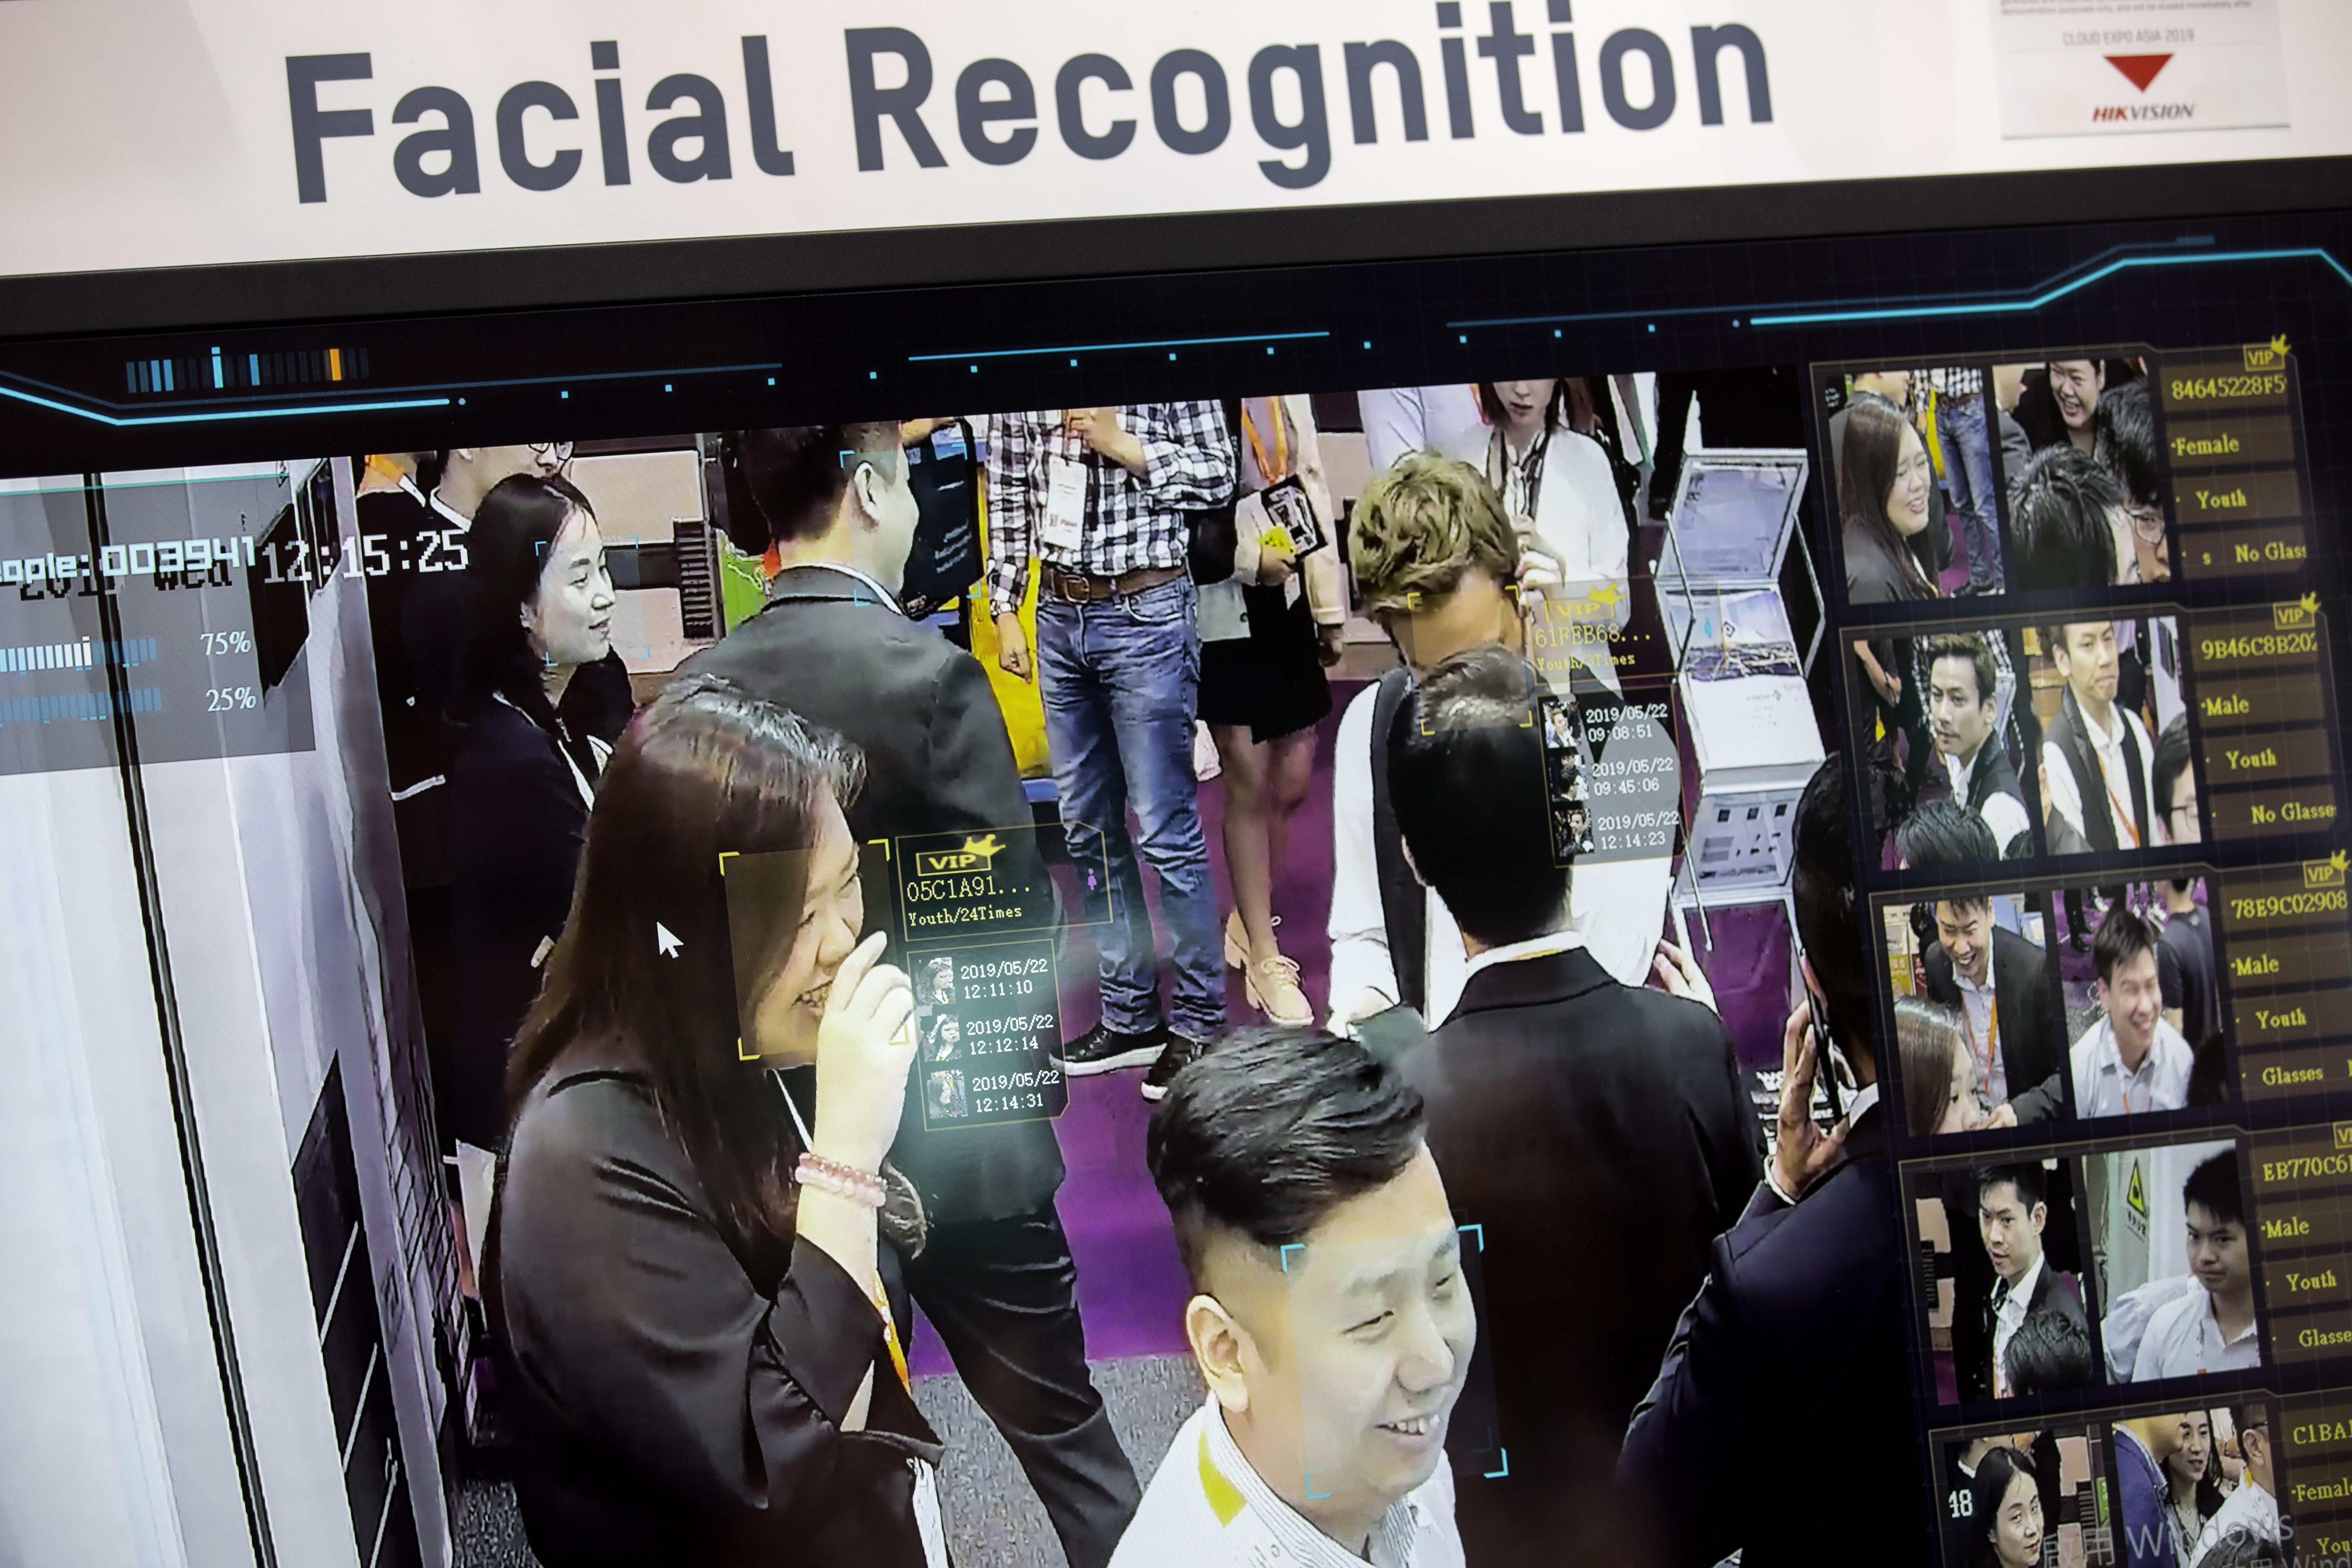 El reconocimiento facial es una tecnología que crece cada vez más en diferentes paíes. (Foto Prensa Libre: EFE)